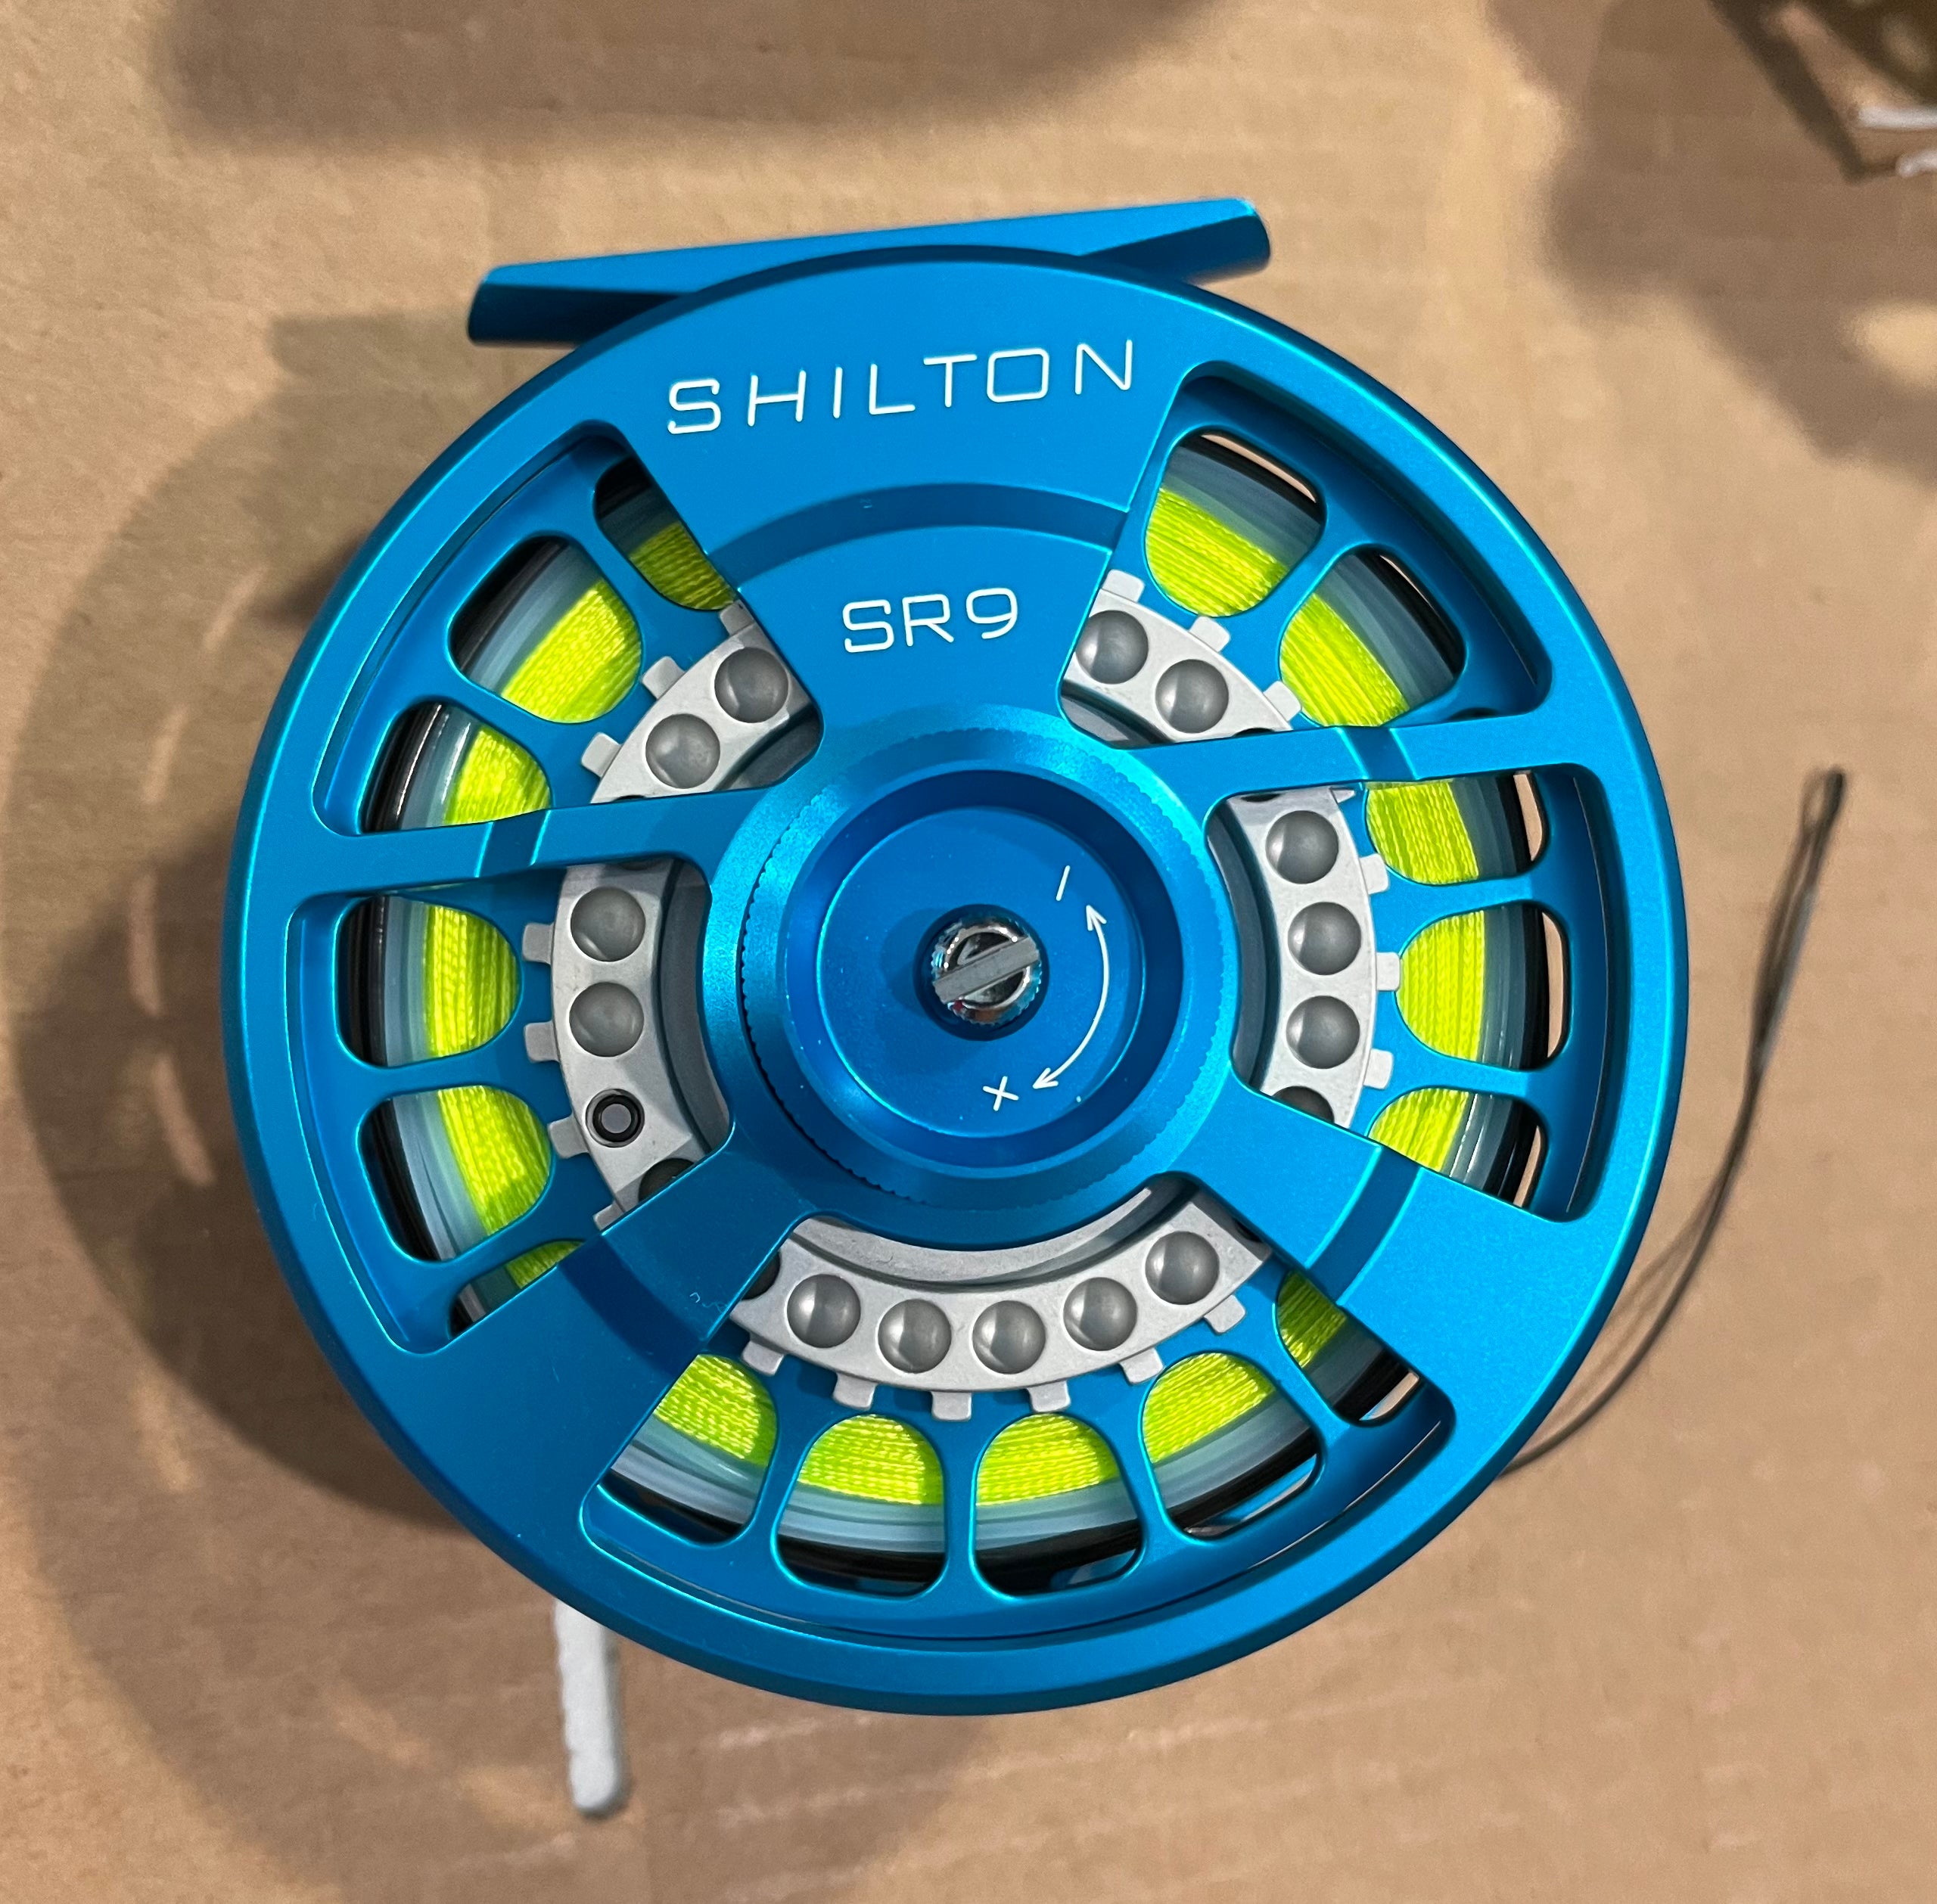 Shilton SR9 Turquoise Reels (8-9wt)